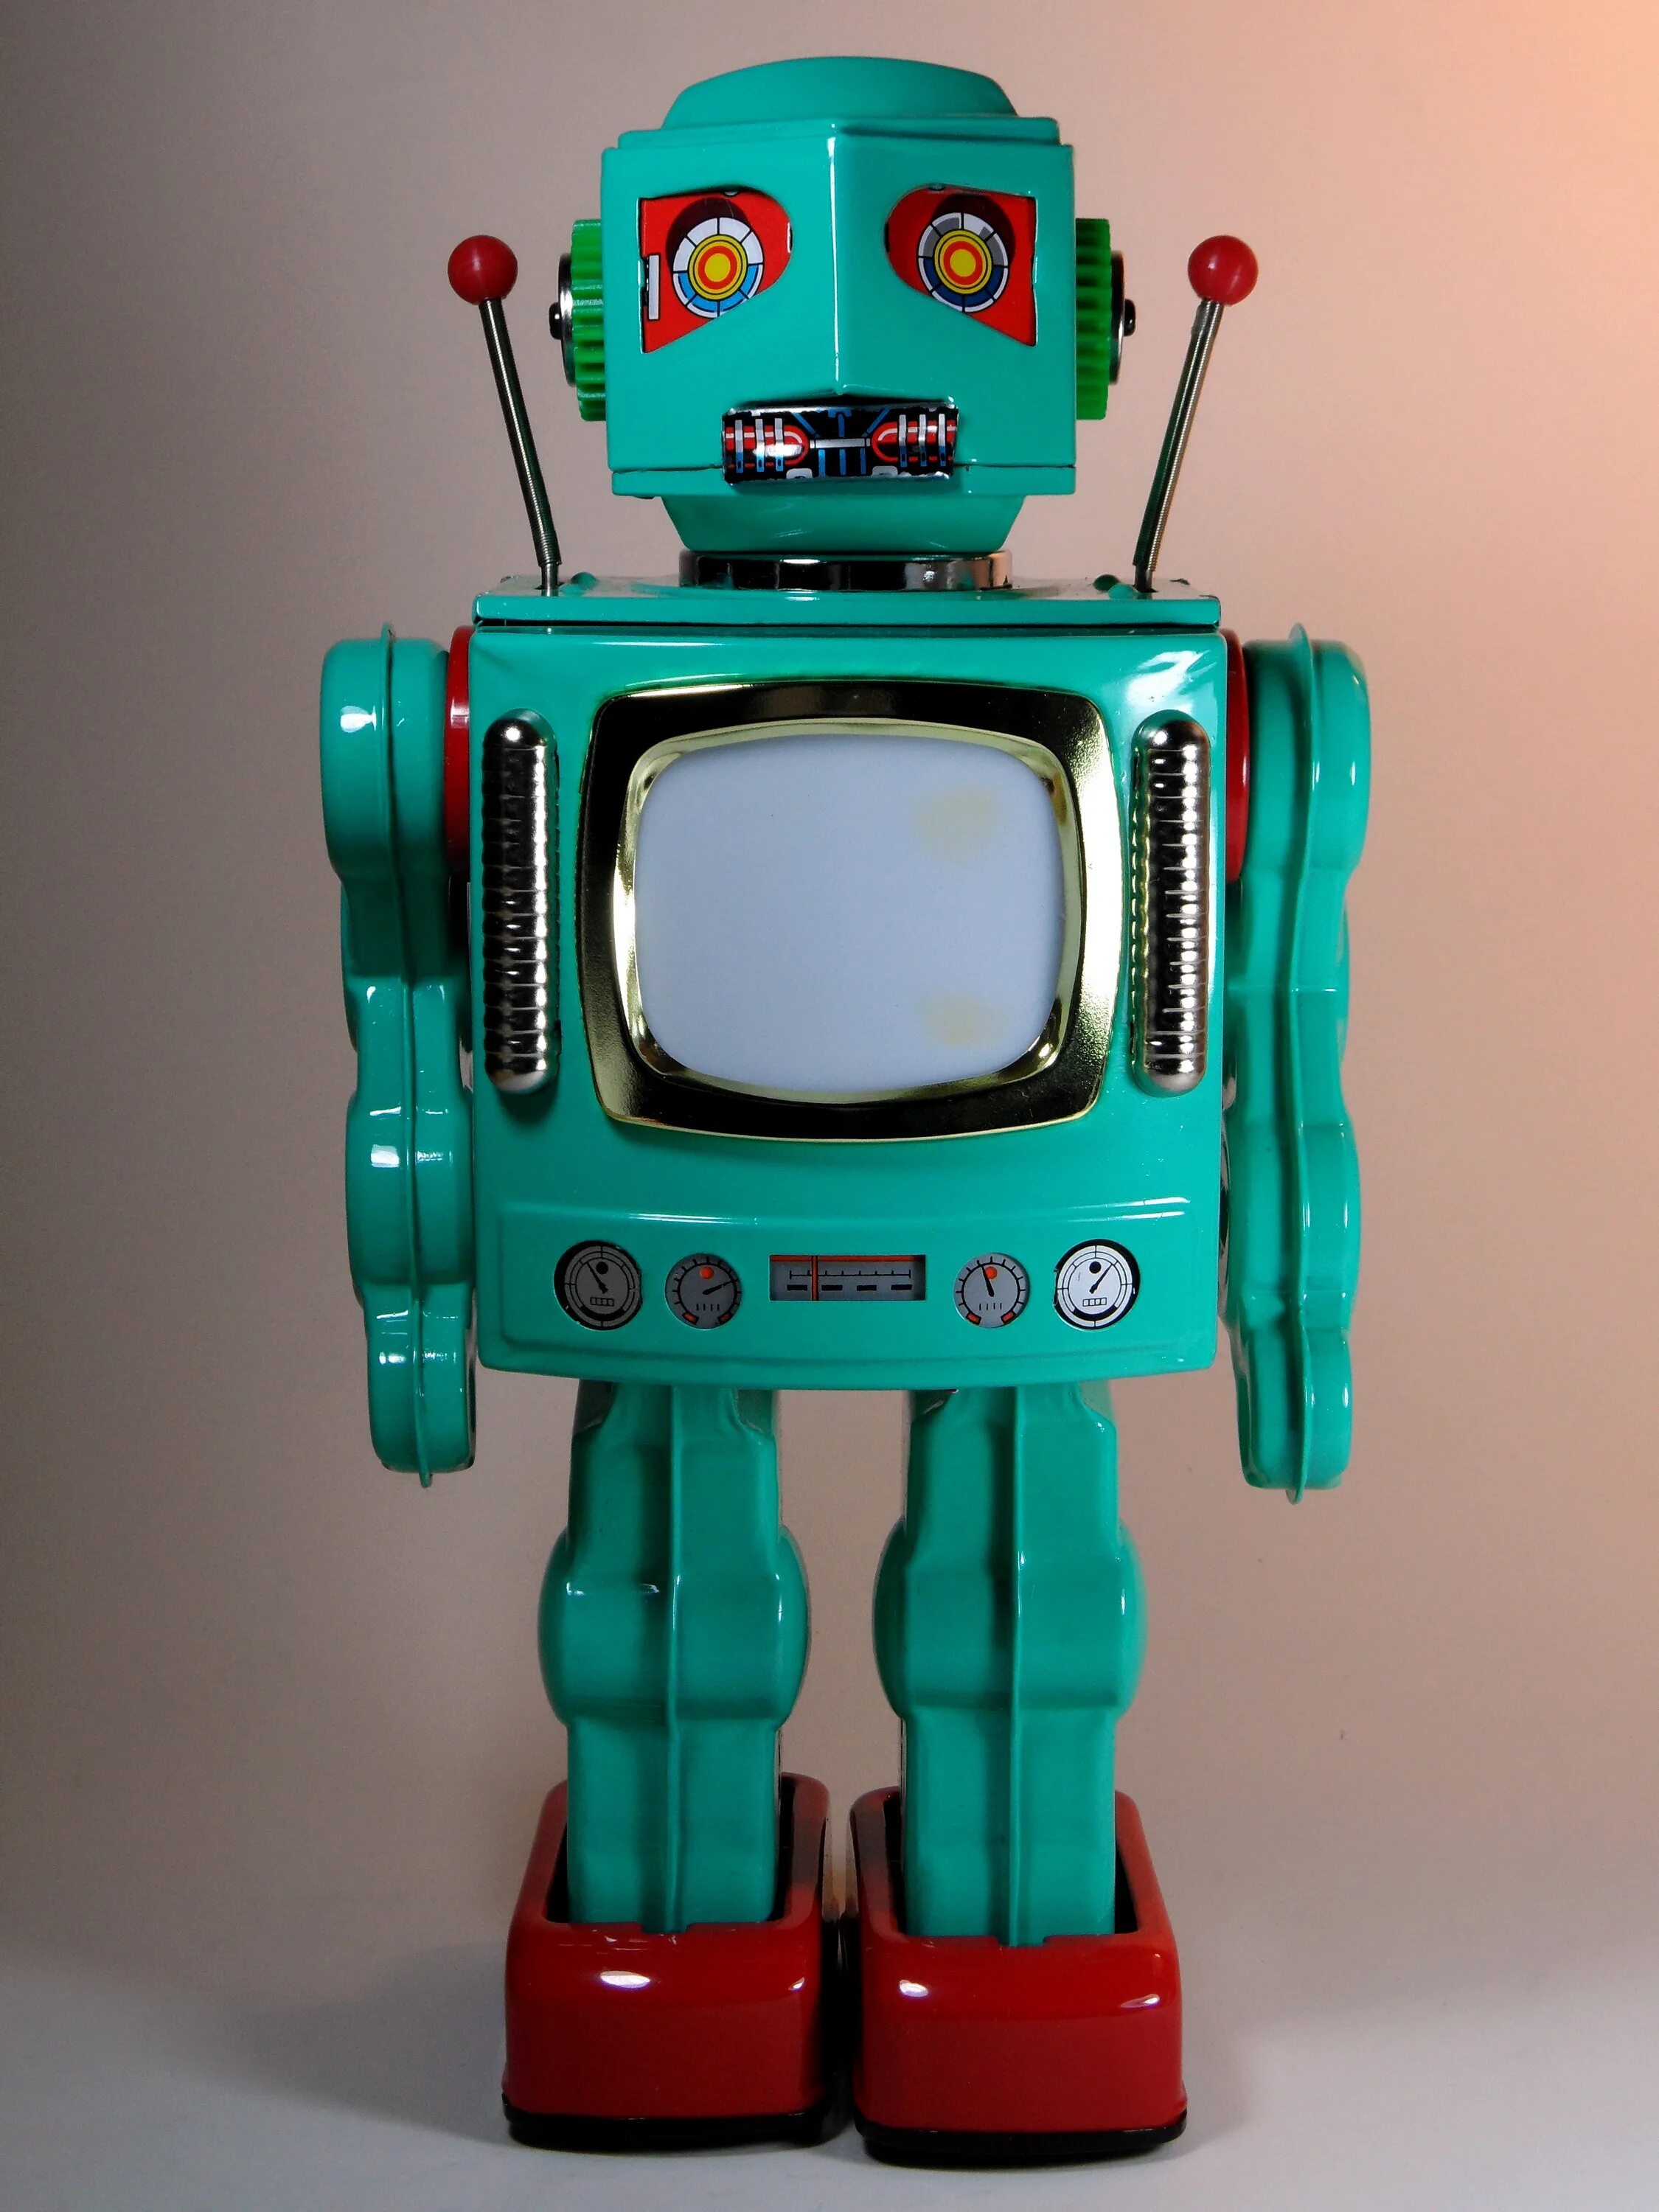 Robots tv. Робот телевизор. Робо-эдвайзер. Игрушка робот телевизор. Робот 2010.